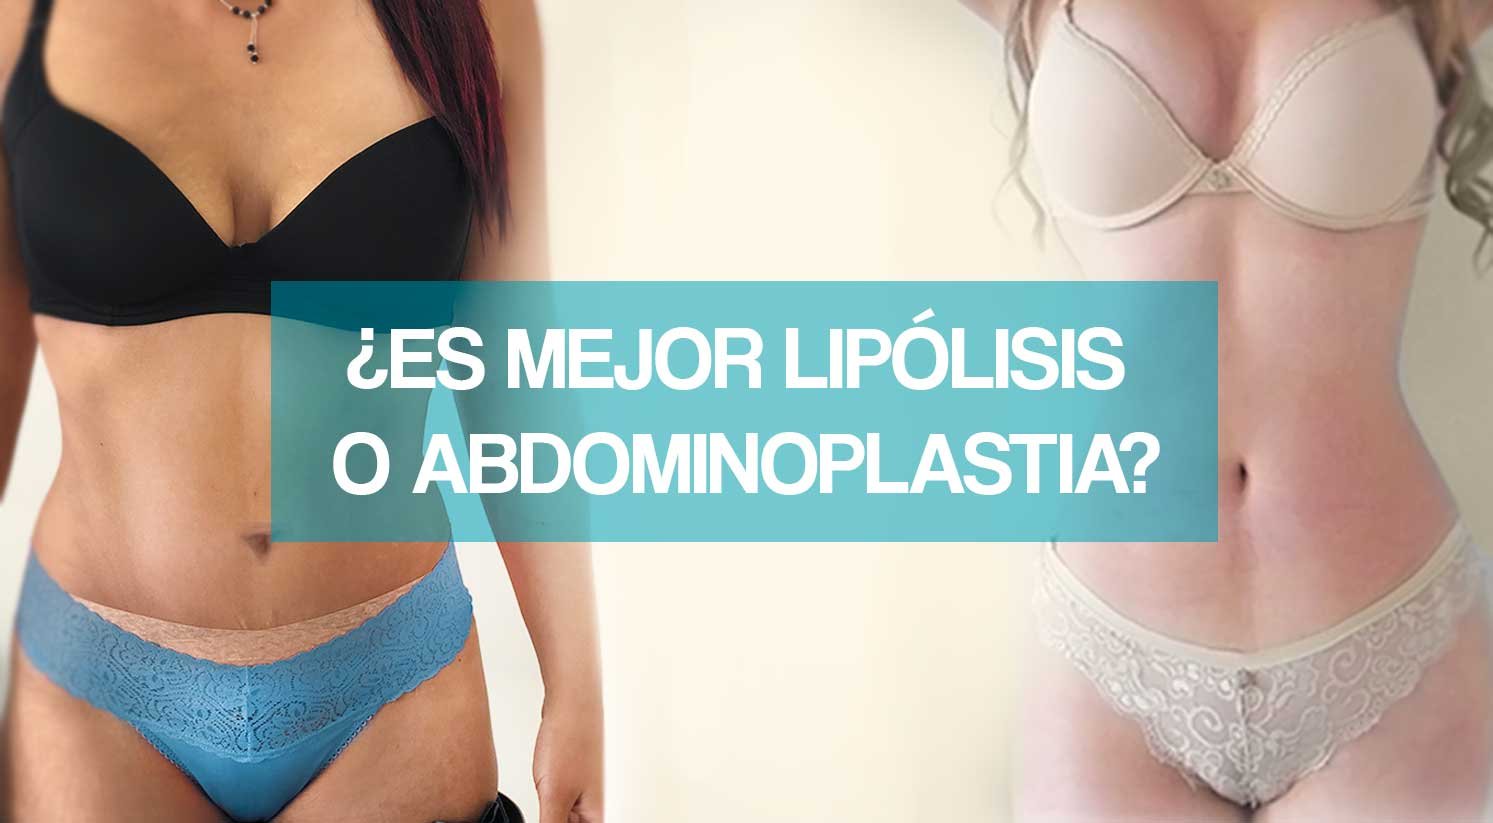 ¿Es mejor lipólisis o abdominoplastia?